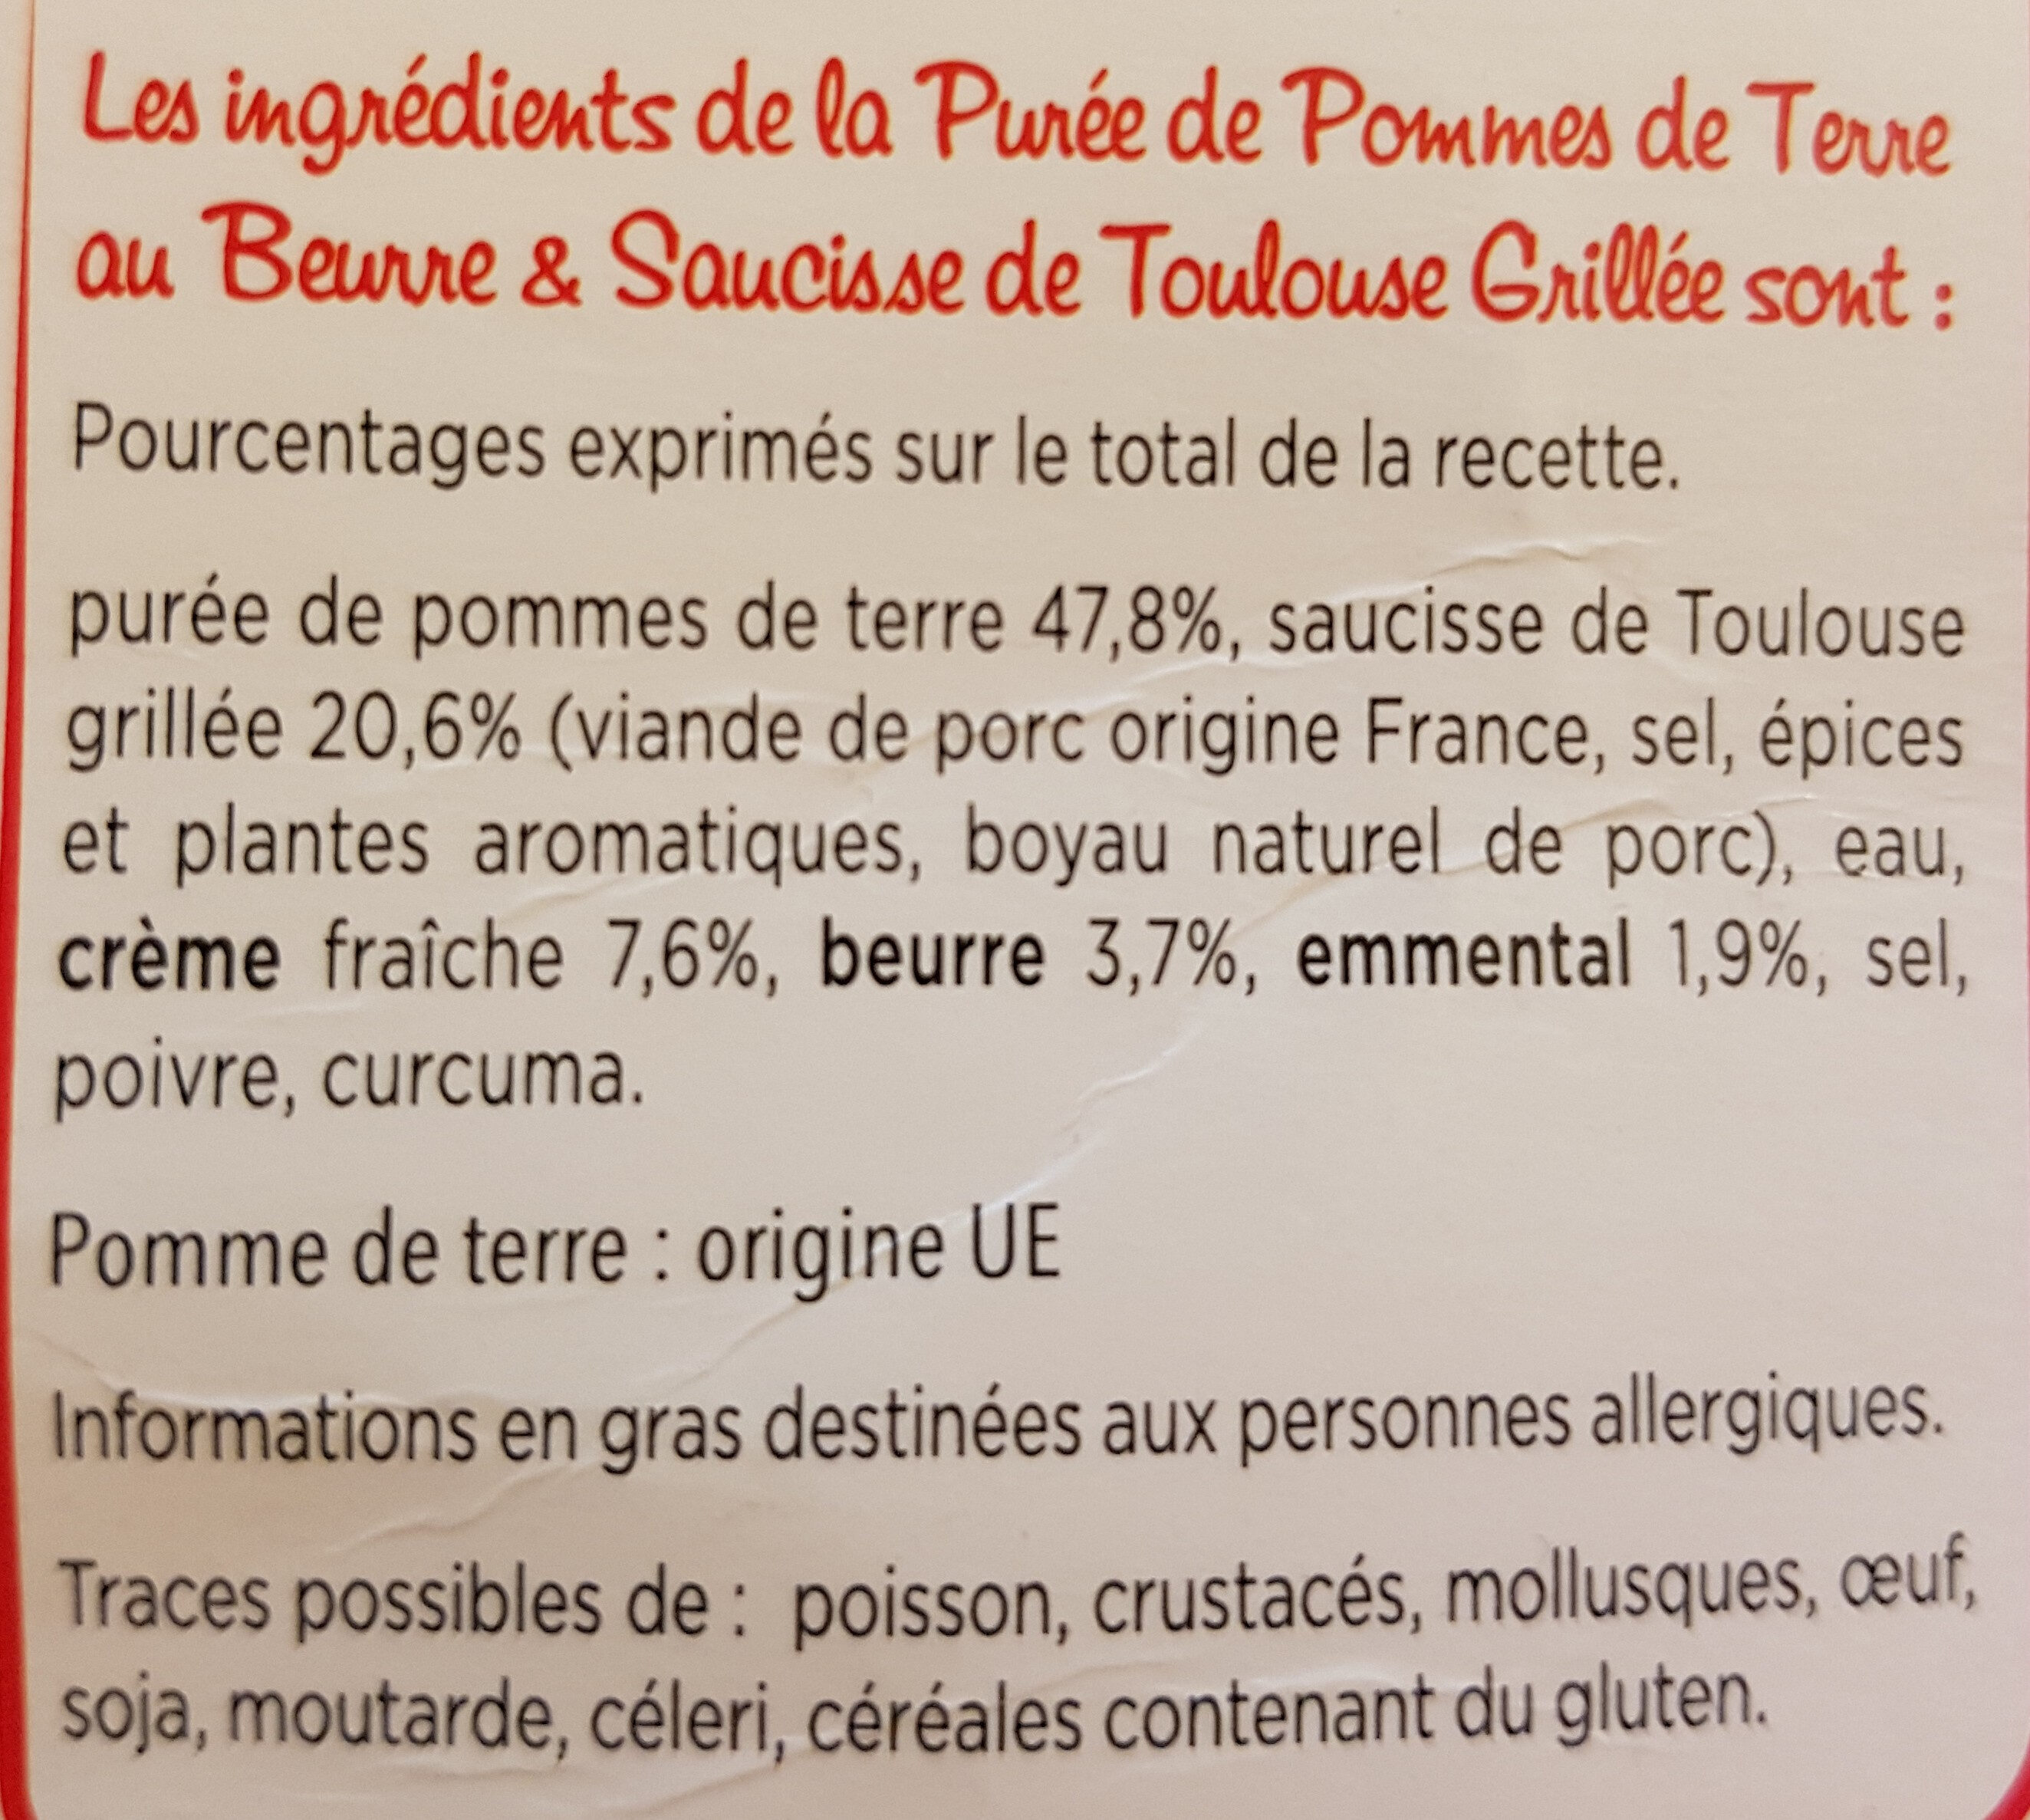 Saucisse de Toulouse grillée & purée au beurre - Ingredienser - fr